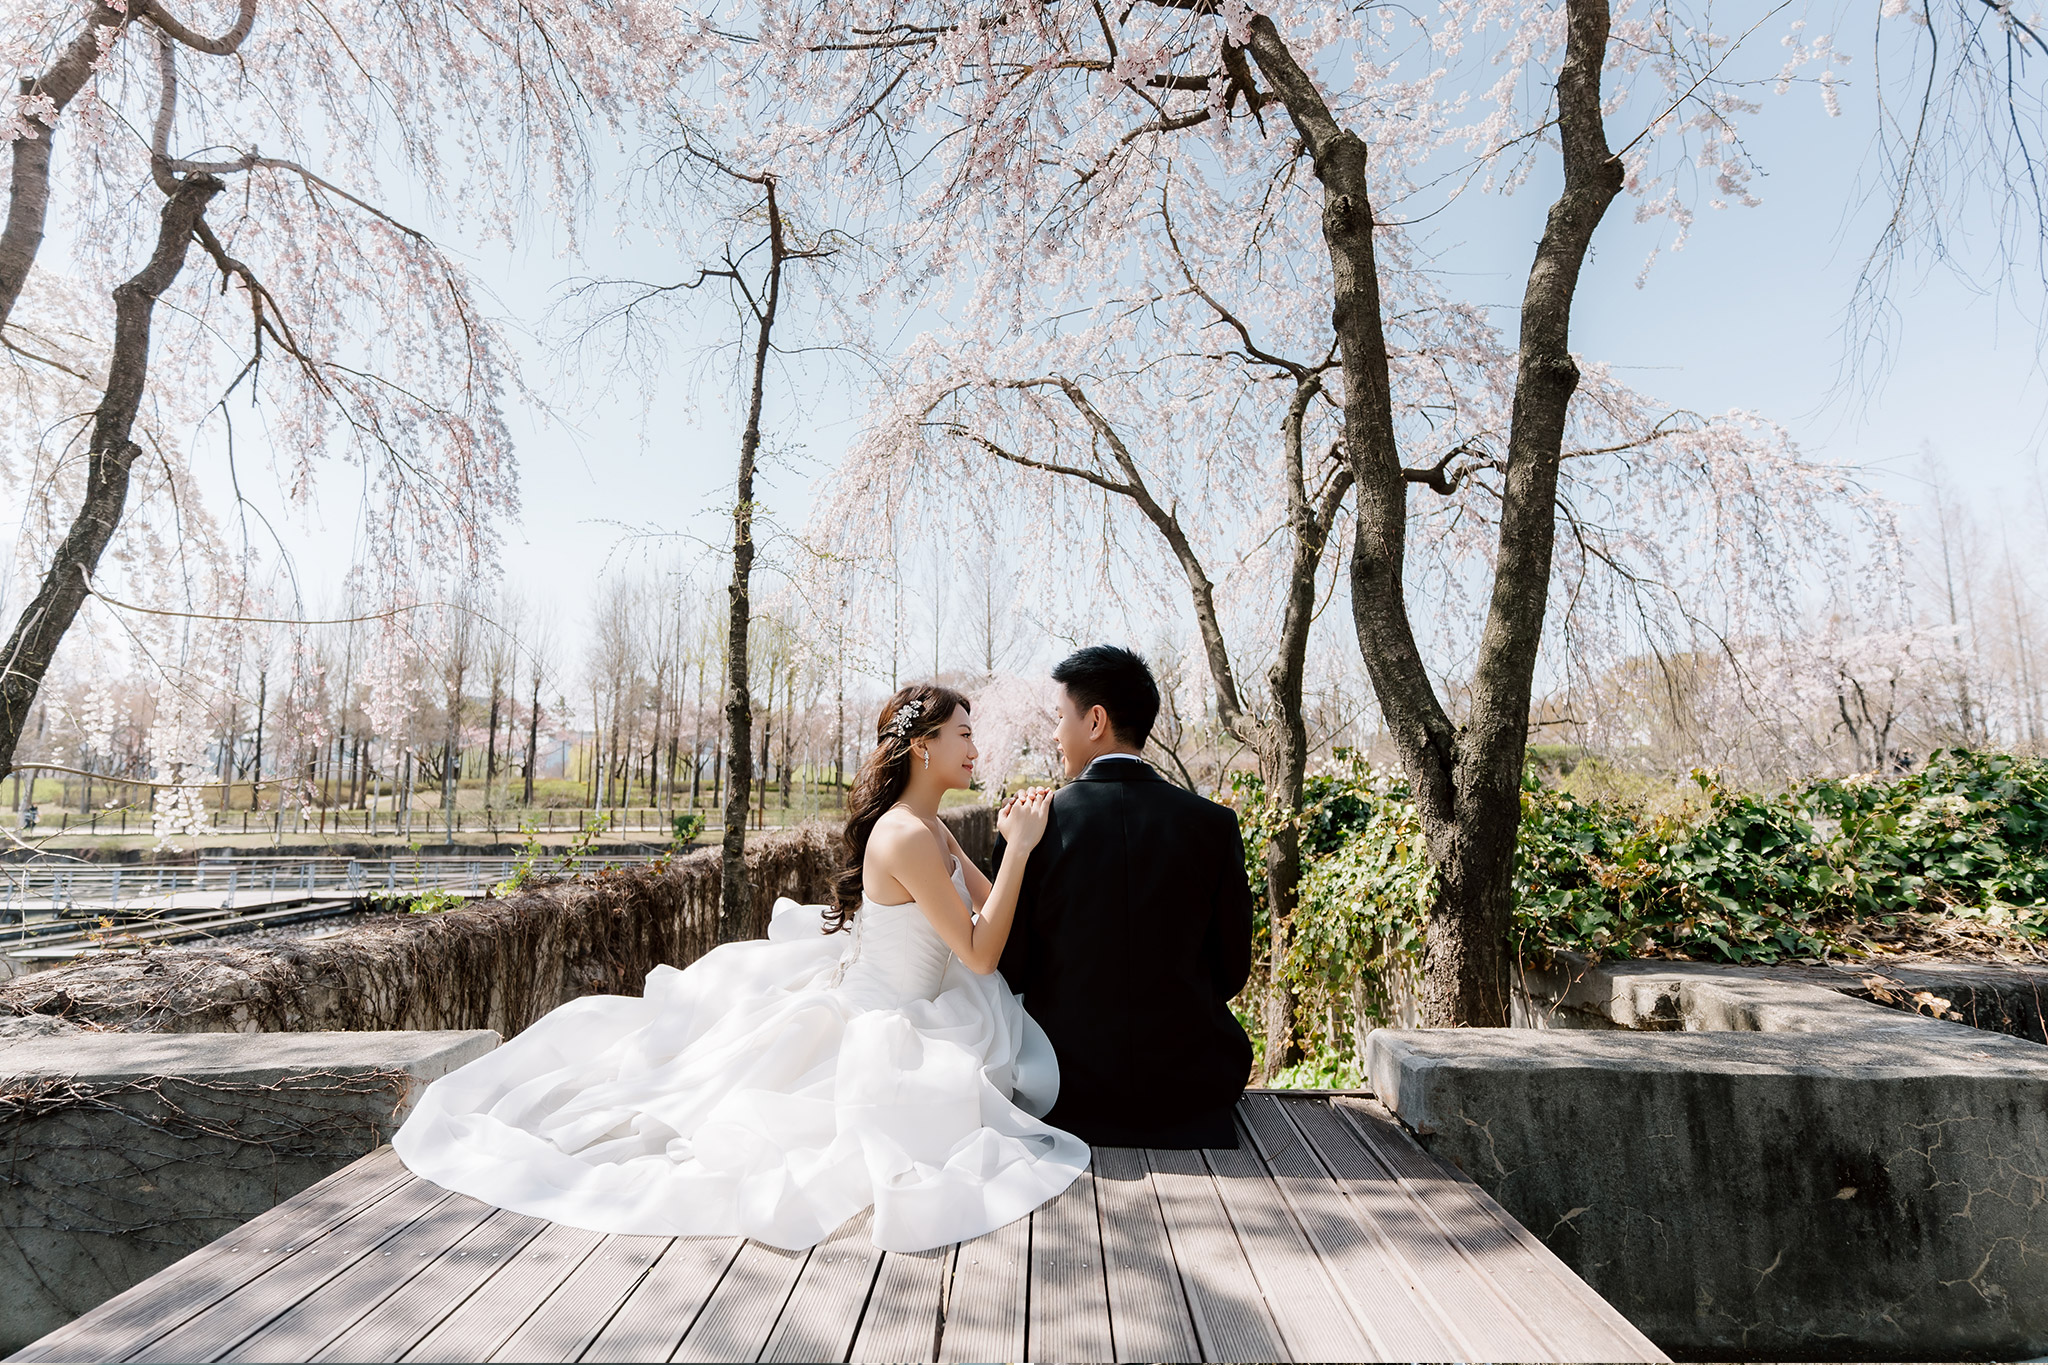 韓國首爾櫻花季婚紗拍攝 仙遊島公園和南山谷韓屋村 by Jungyeol on OneThreeOneFour 2